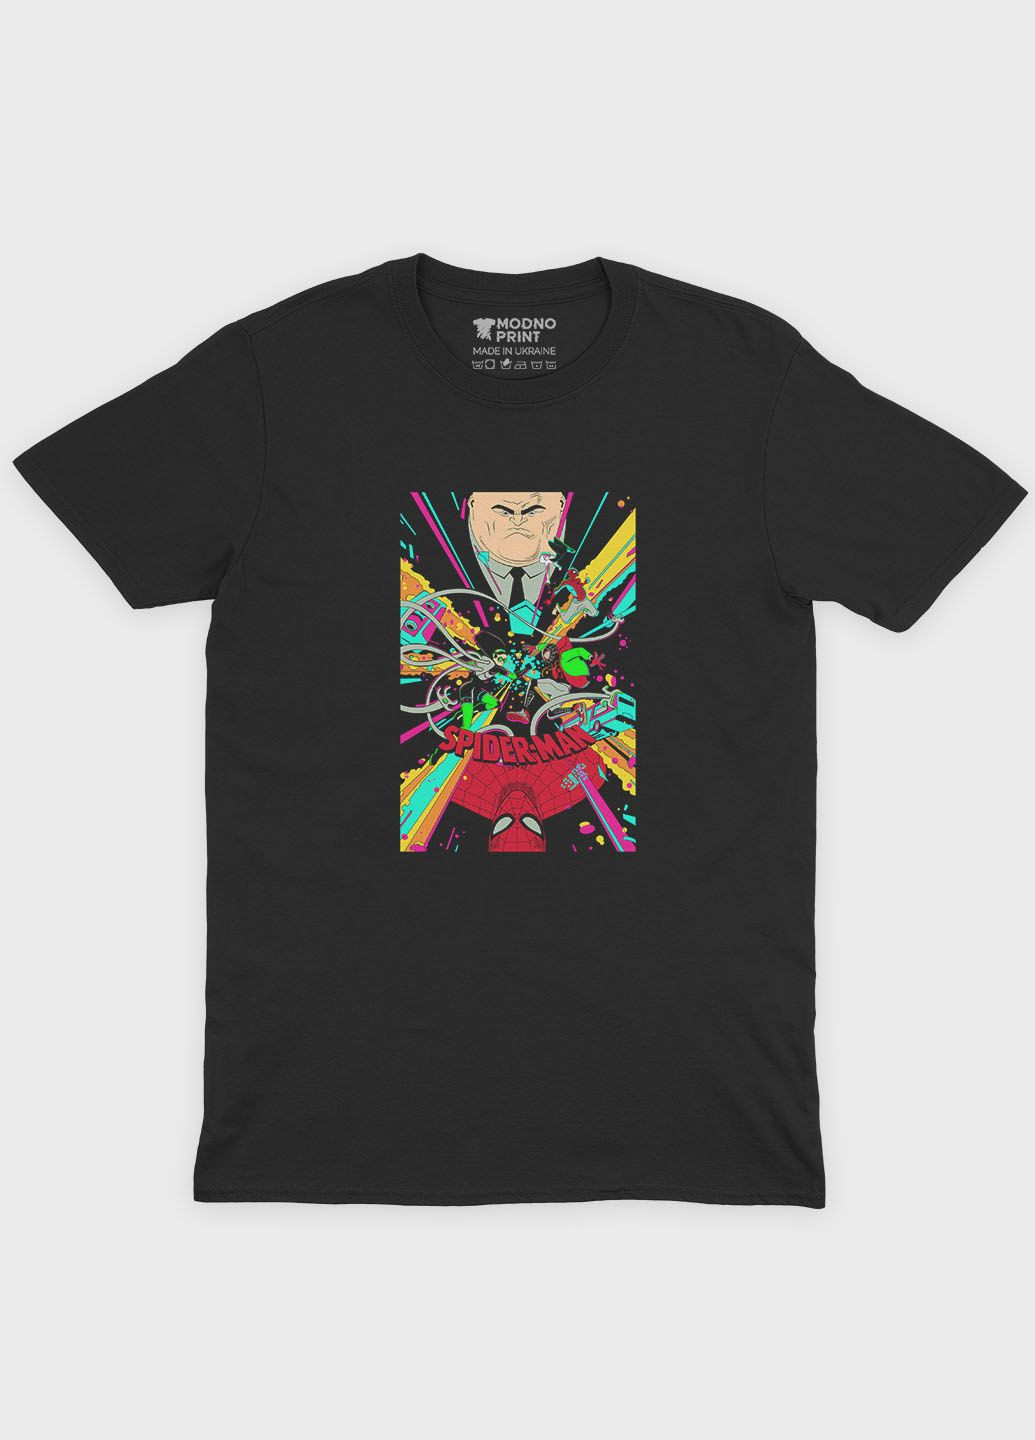 Черная демисезонная футболка для девочки с принтом супергероя - человек-паук (ts001-1-gl-006-014-022-g) Modno